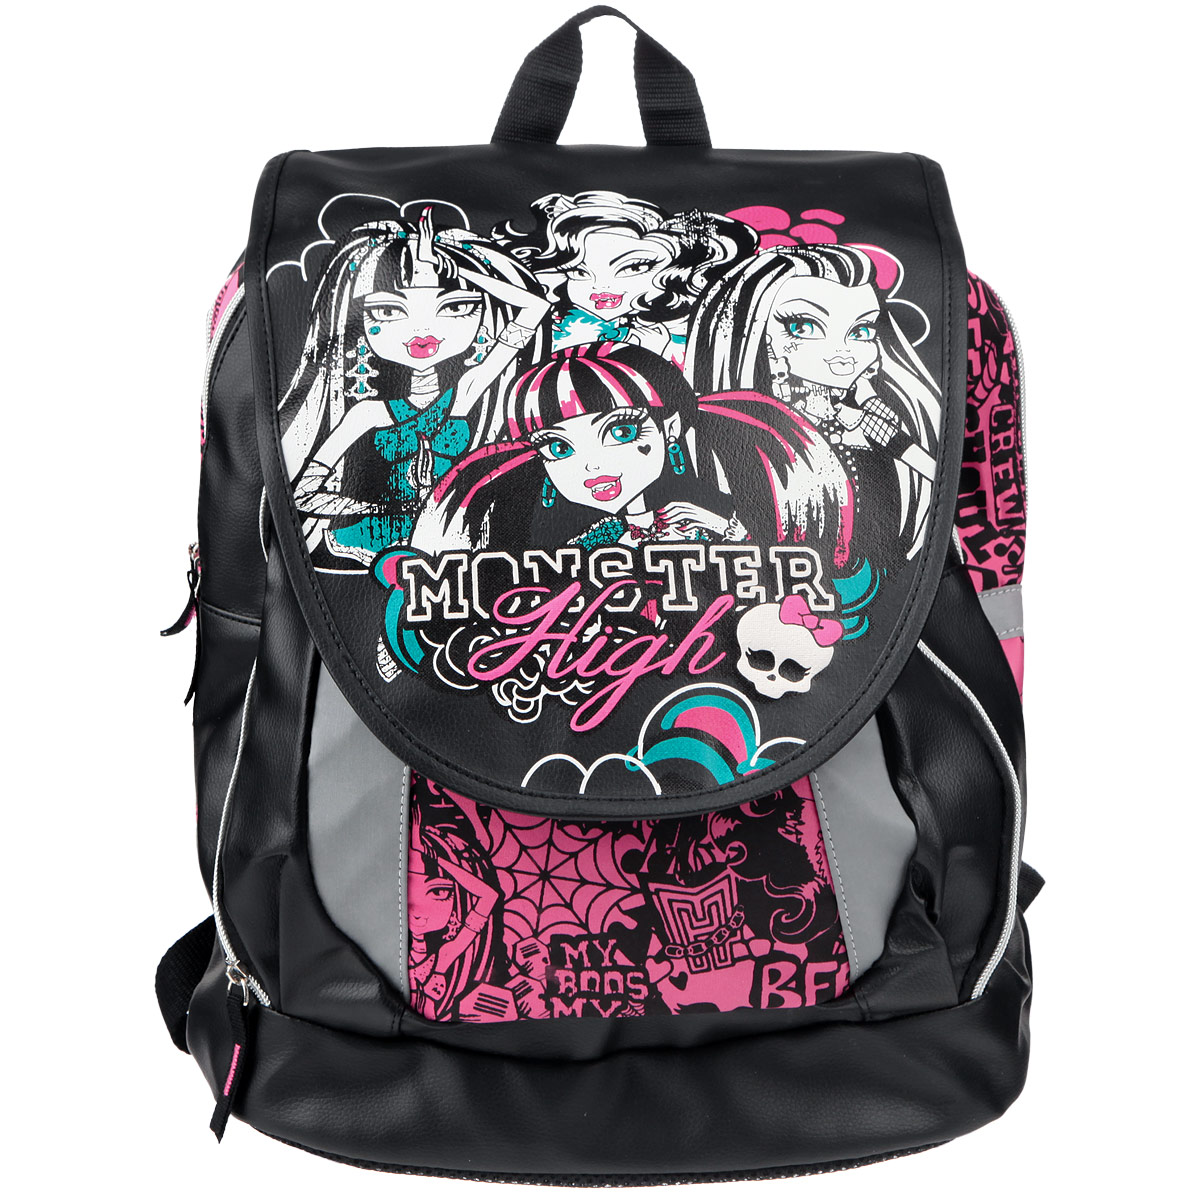 Рюкзак детский "Monster High", цвет: черный, белый, розовый, бирюзовый. MHBB-RT3-588